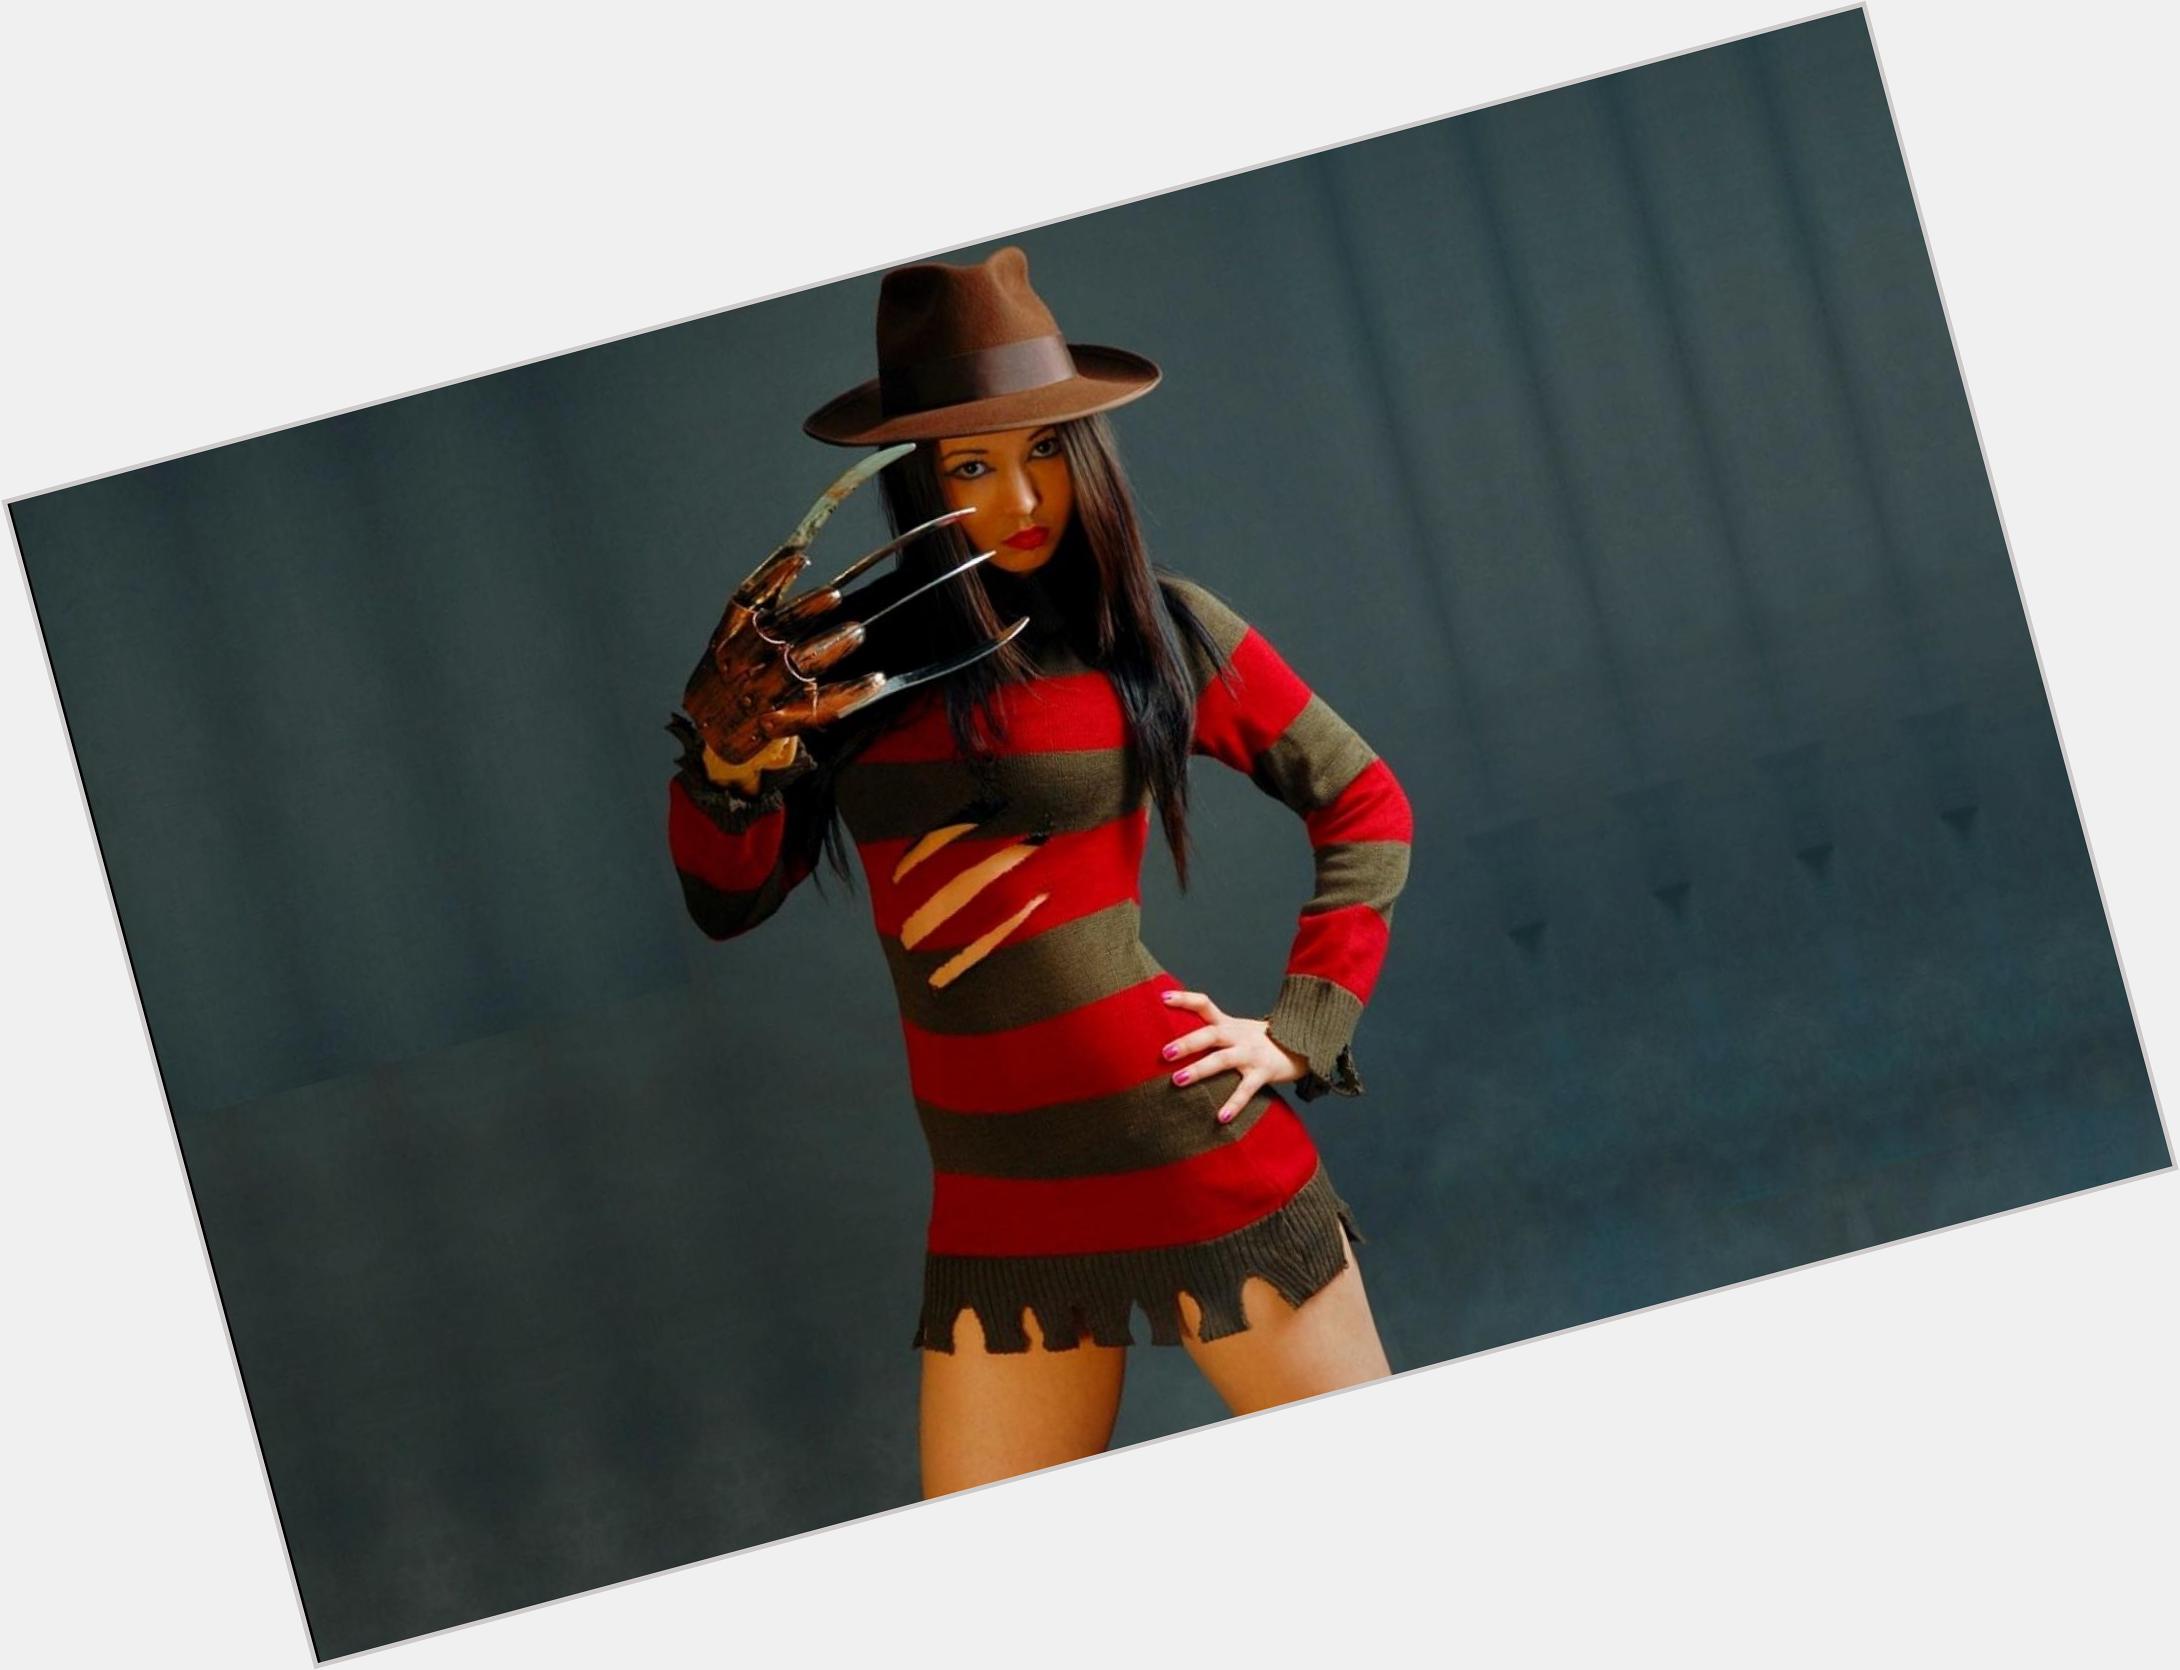 Freddy Krueger full body 4.jpg